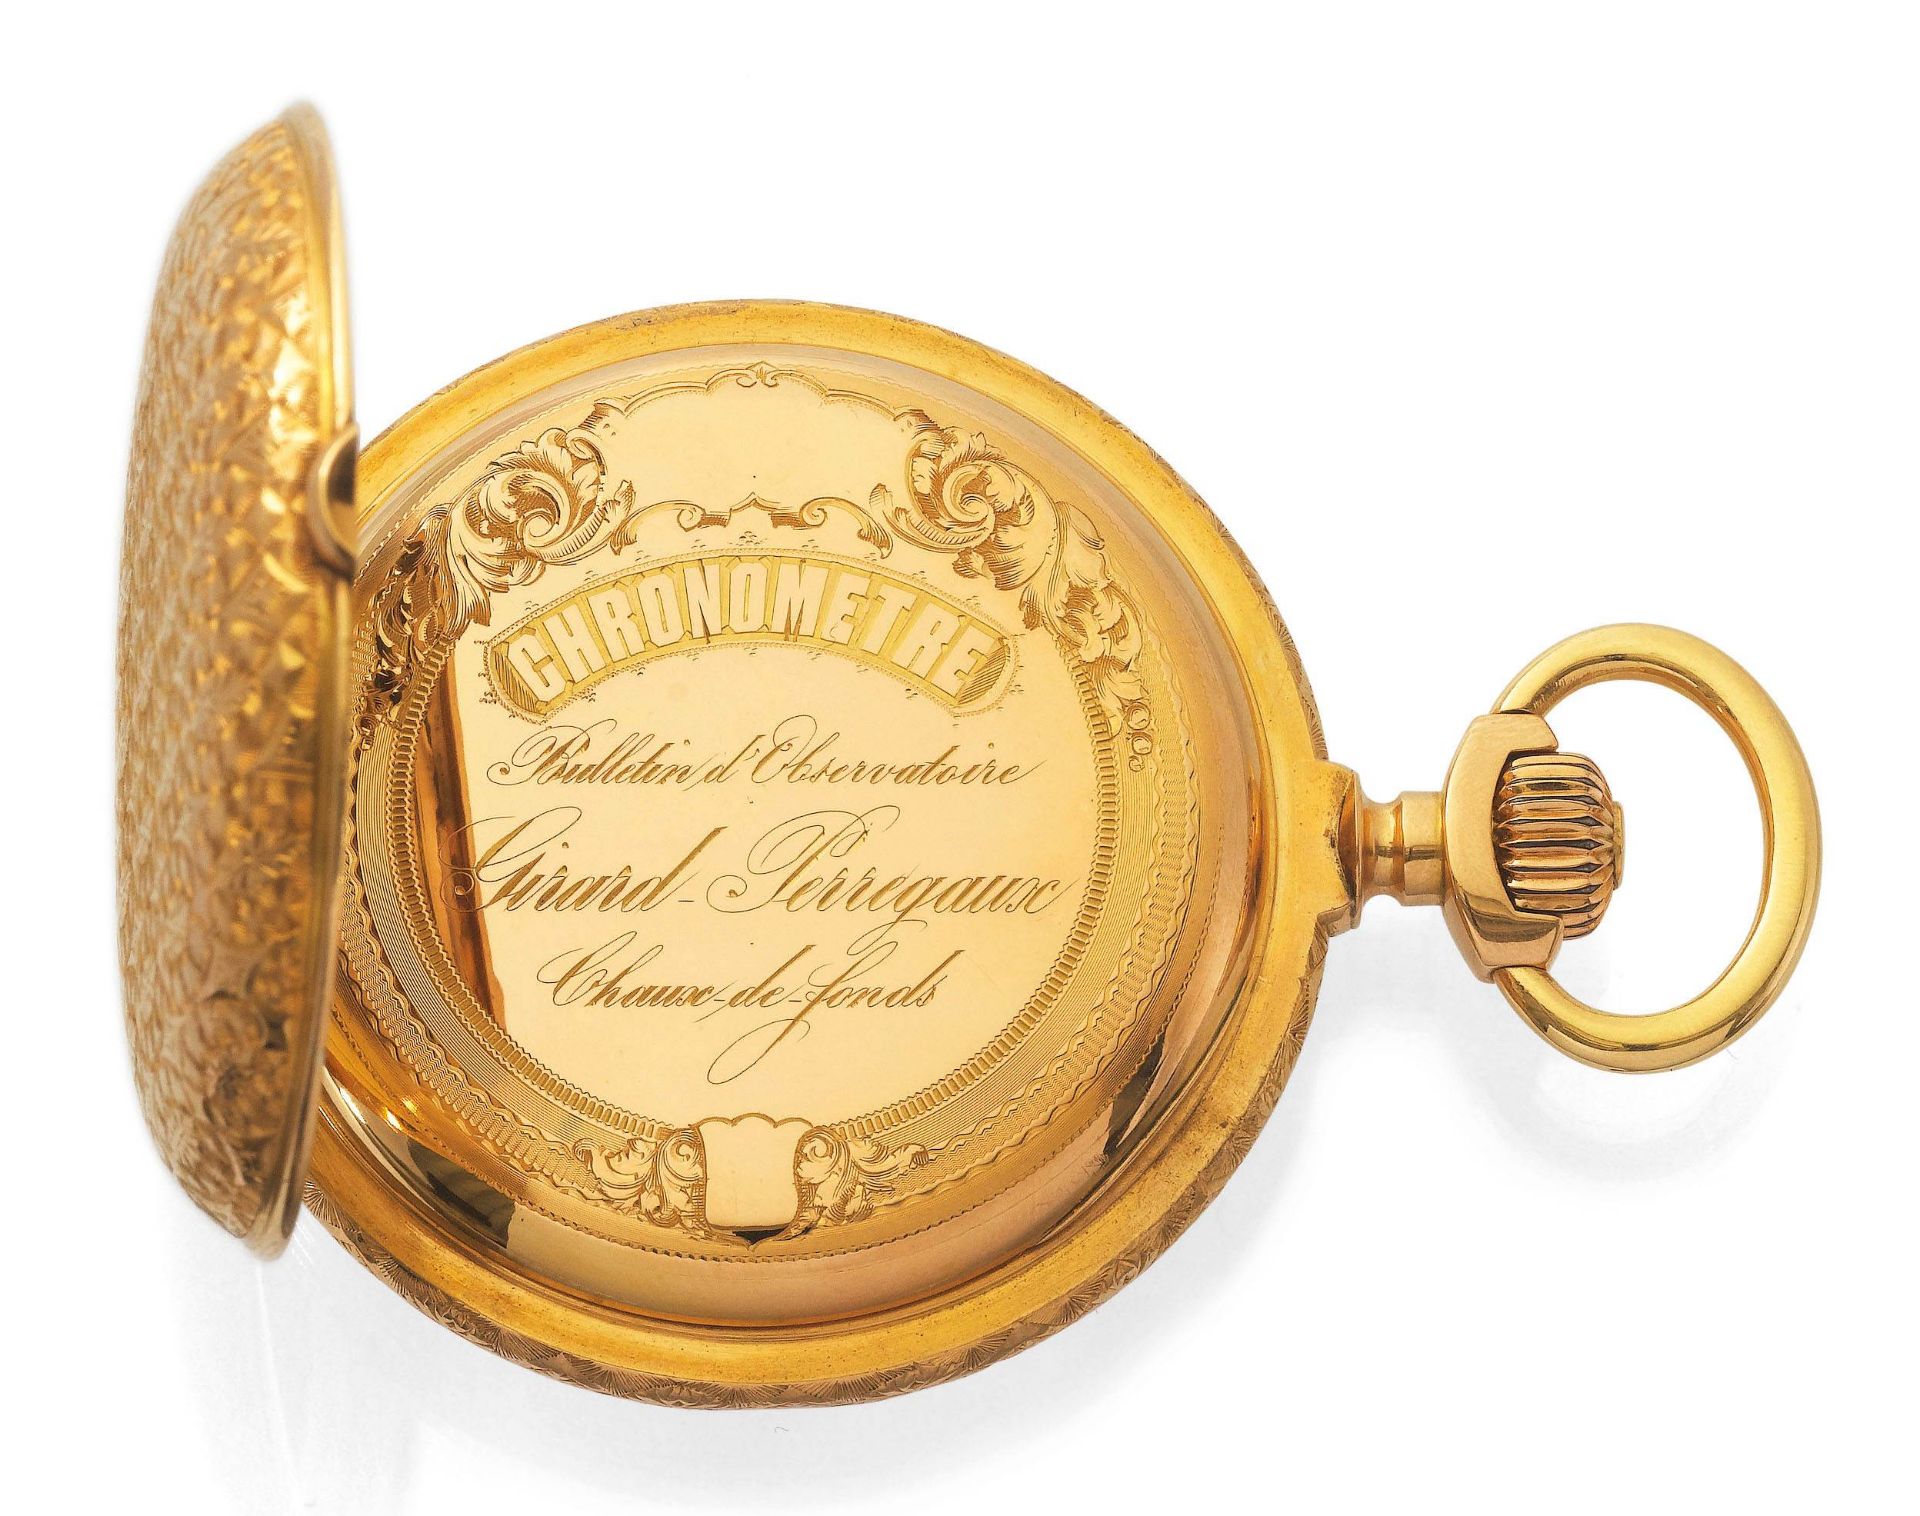 Girard Perregaux, schwerer und seltener Taschen-Chronometer, ca. 1880. - Bild 3 aus 8